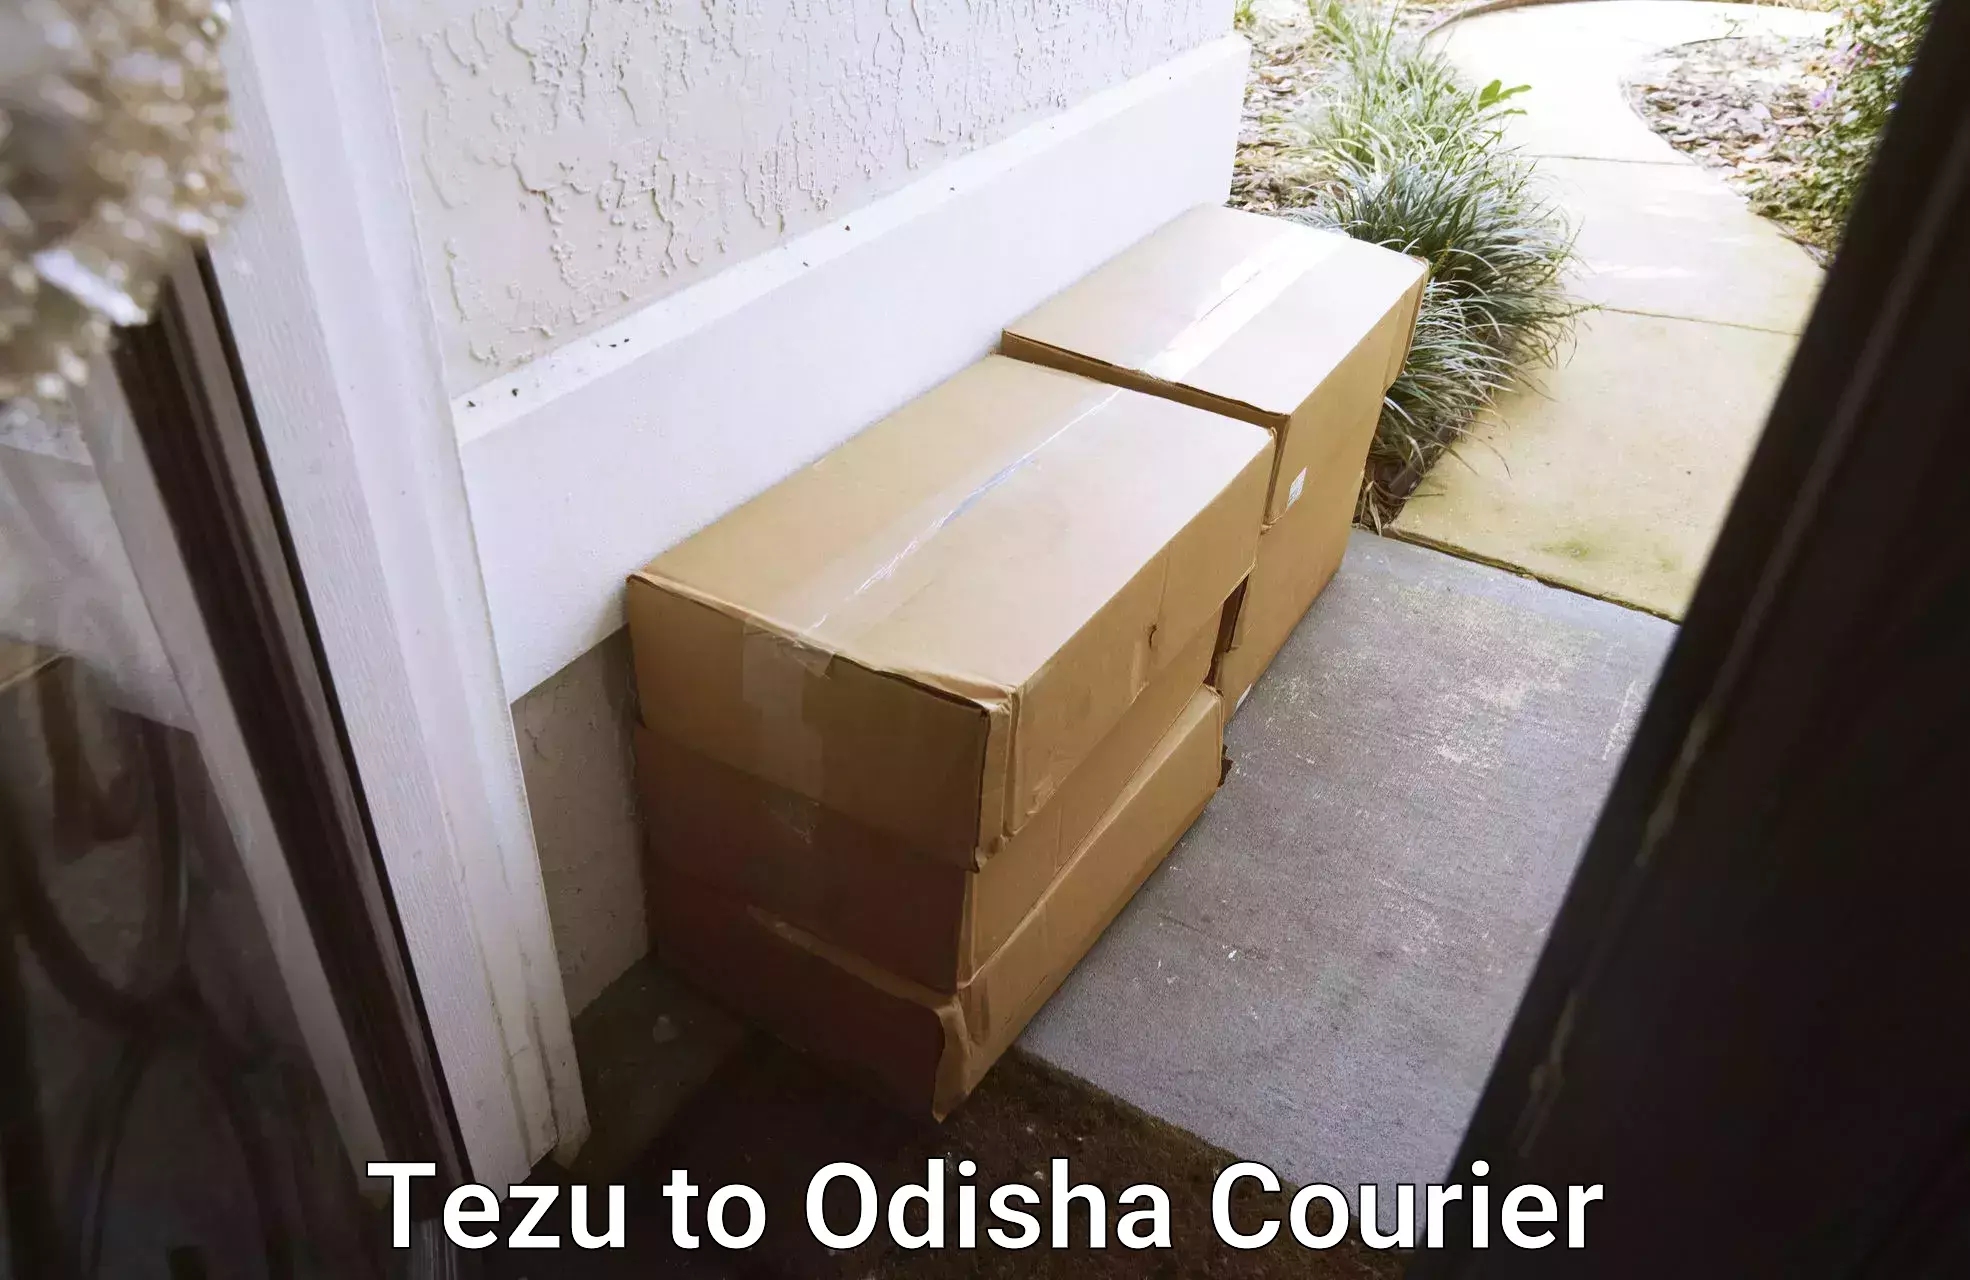 24-hour courier services Tezu to Balliguda